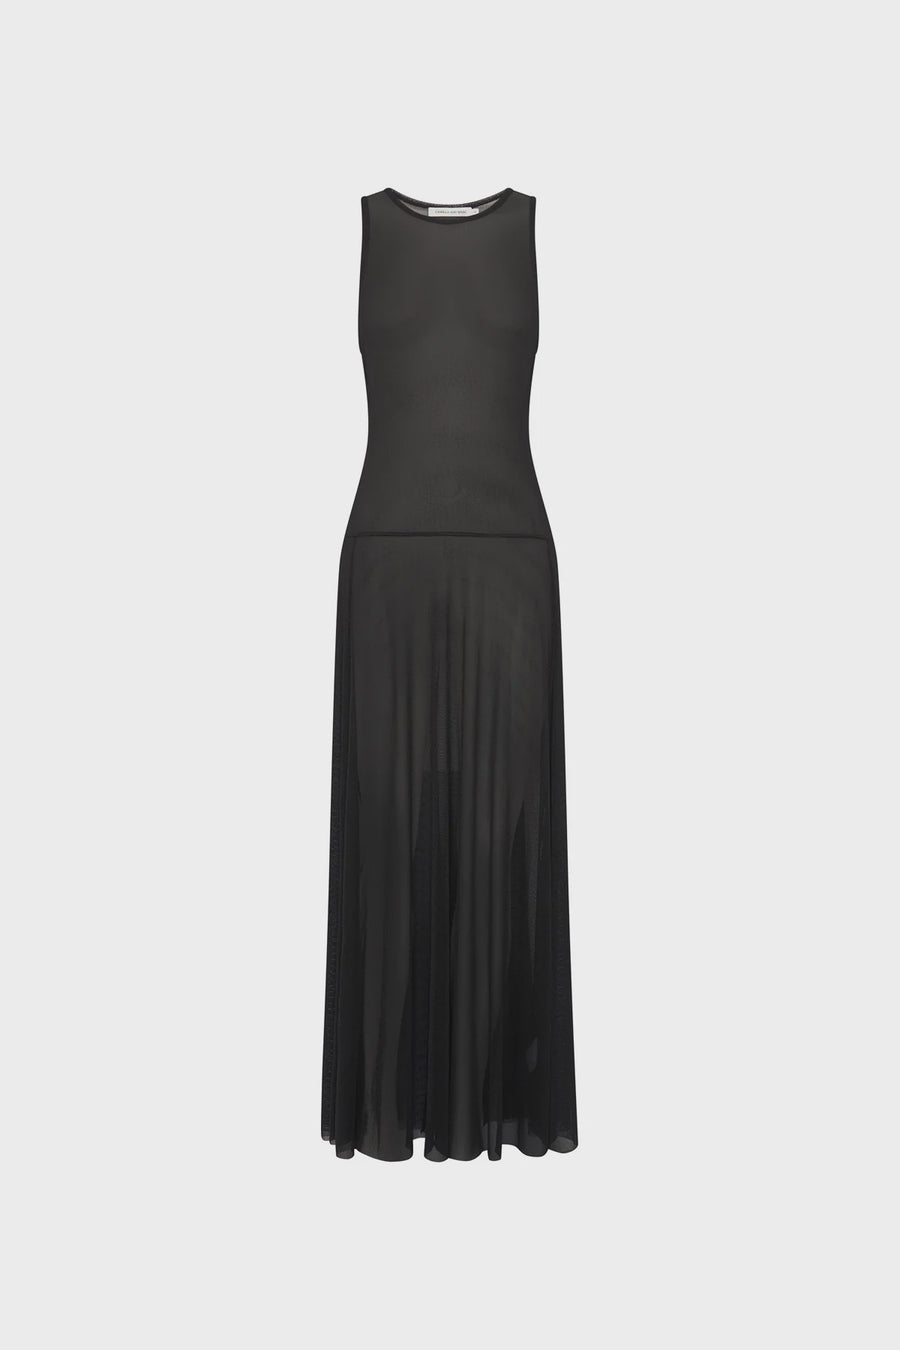 Camilla and Marc Andre Midi Dress in Black